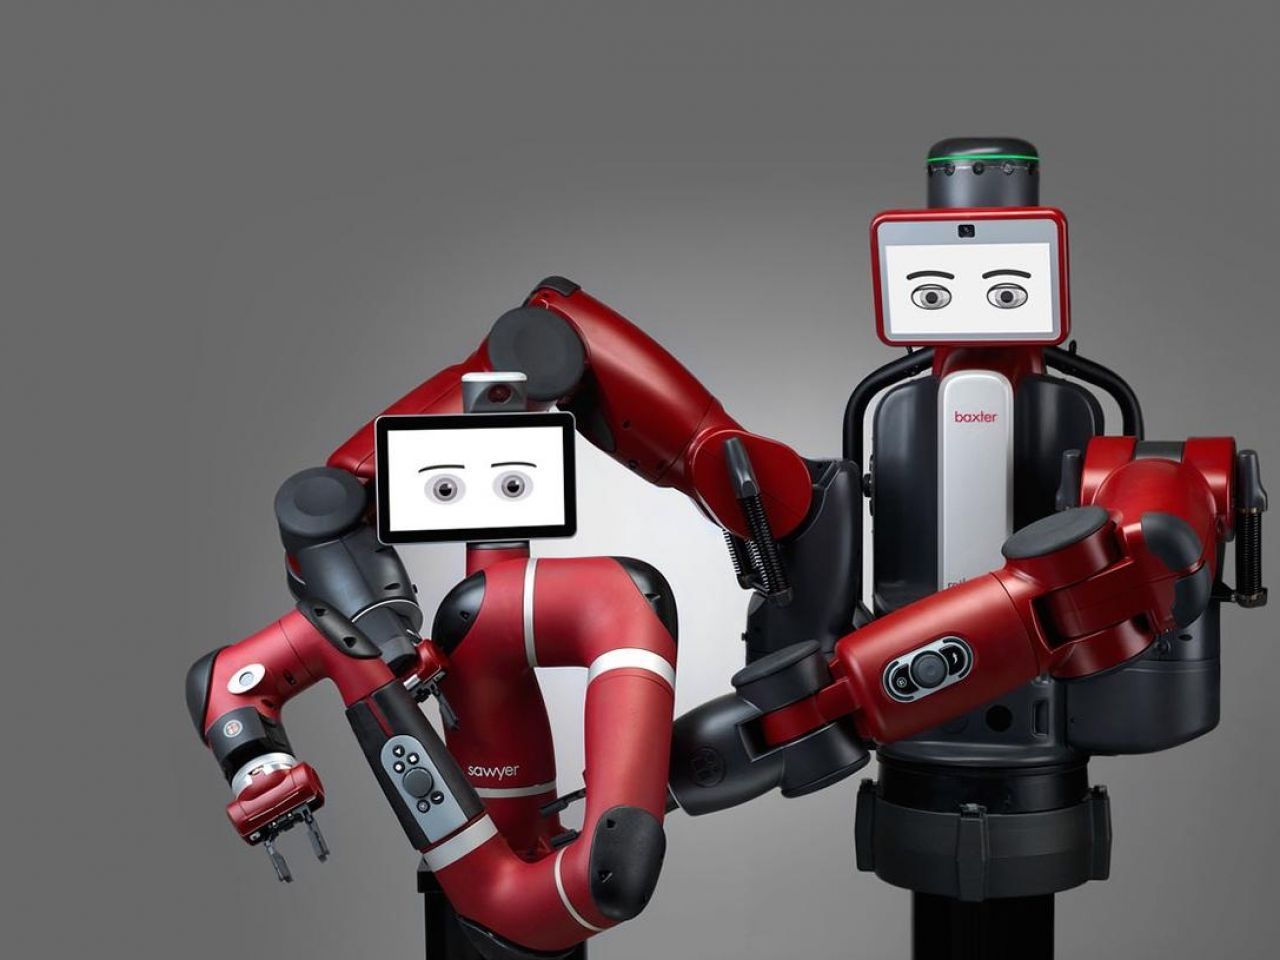 協働ロボットの先駆者Rethink Roboticsが廃業、業界に衝撃 - CNET 